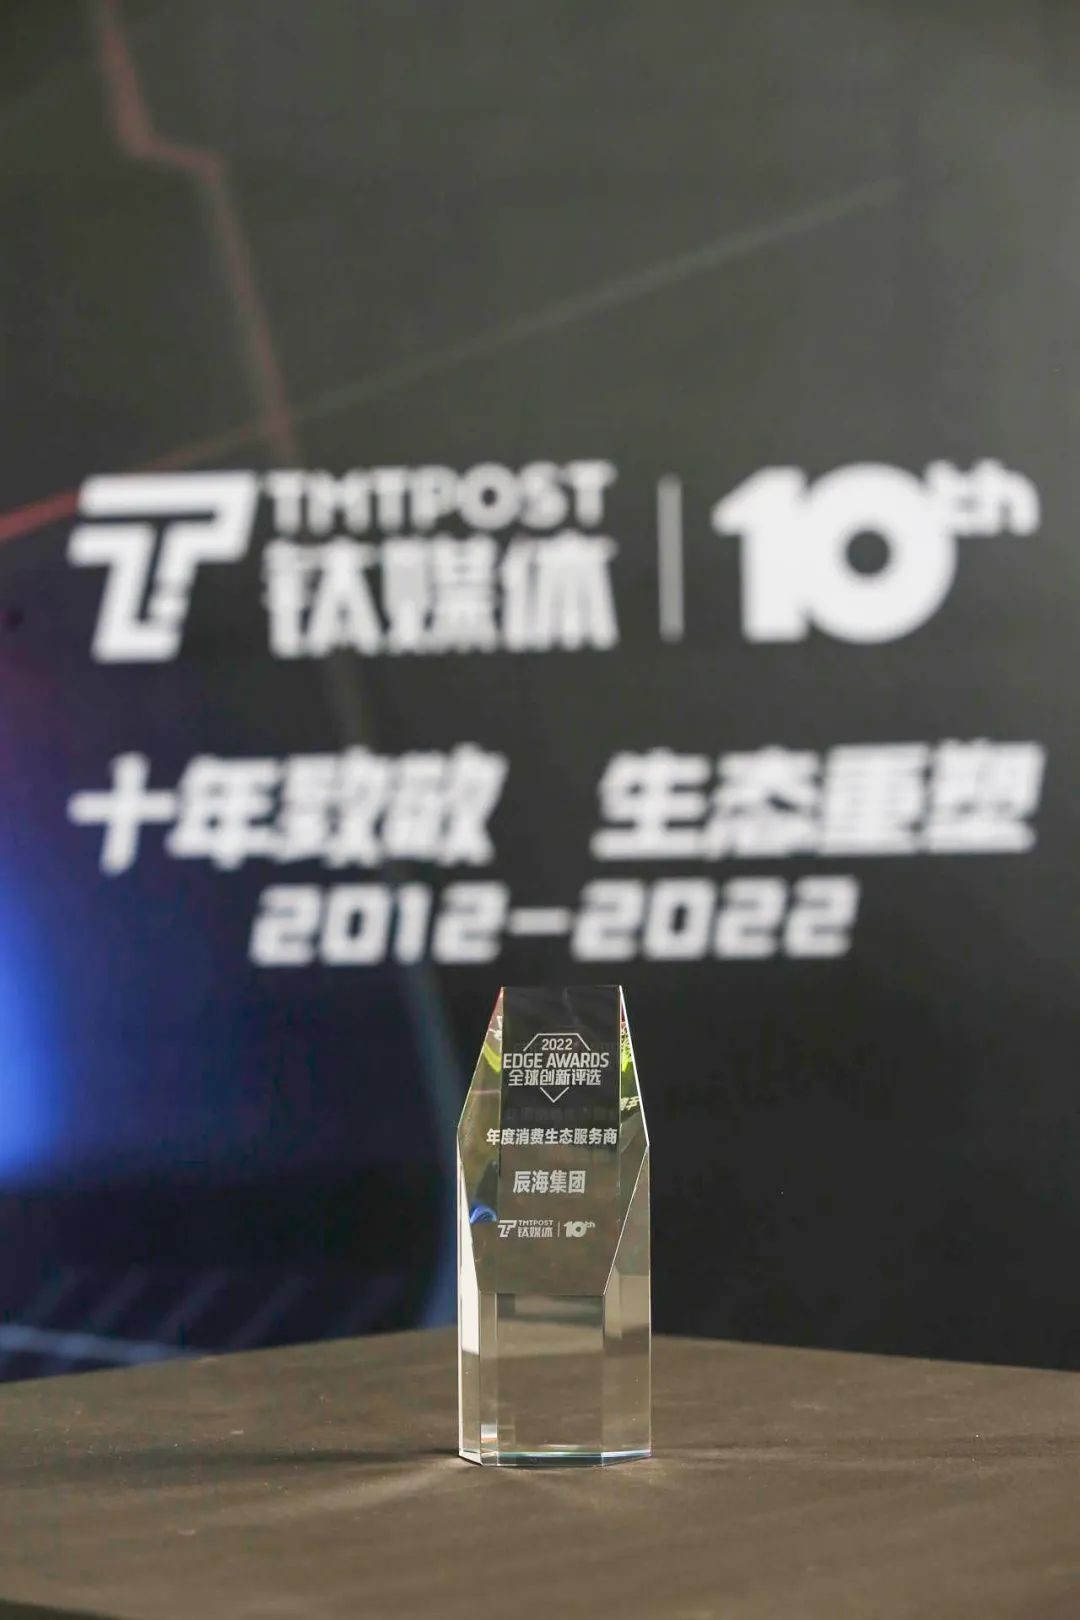 辰海集团获钛媒体2022 EDGE AWARDS“年度消费生态服务商”奖项